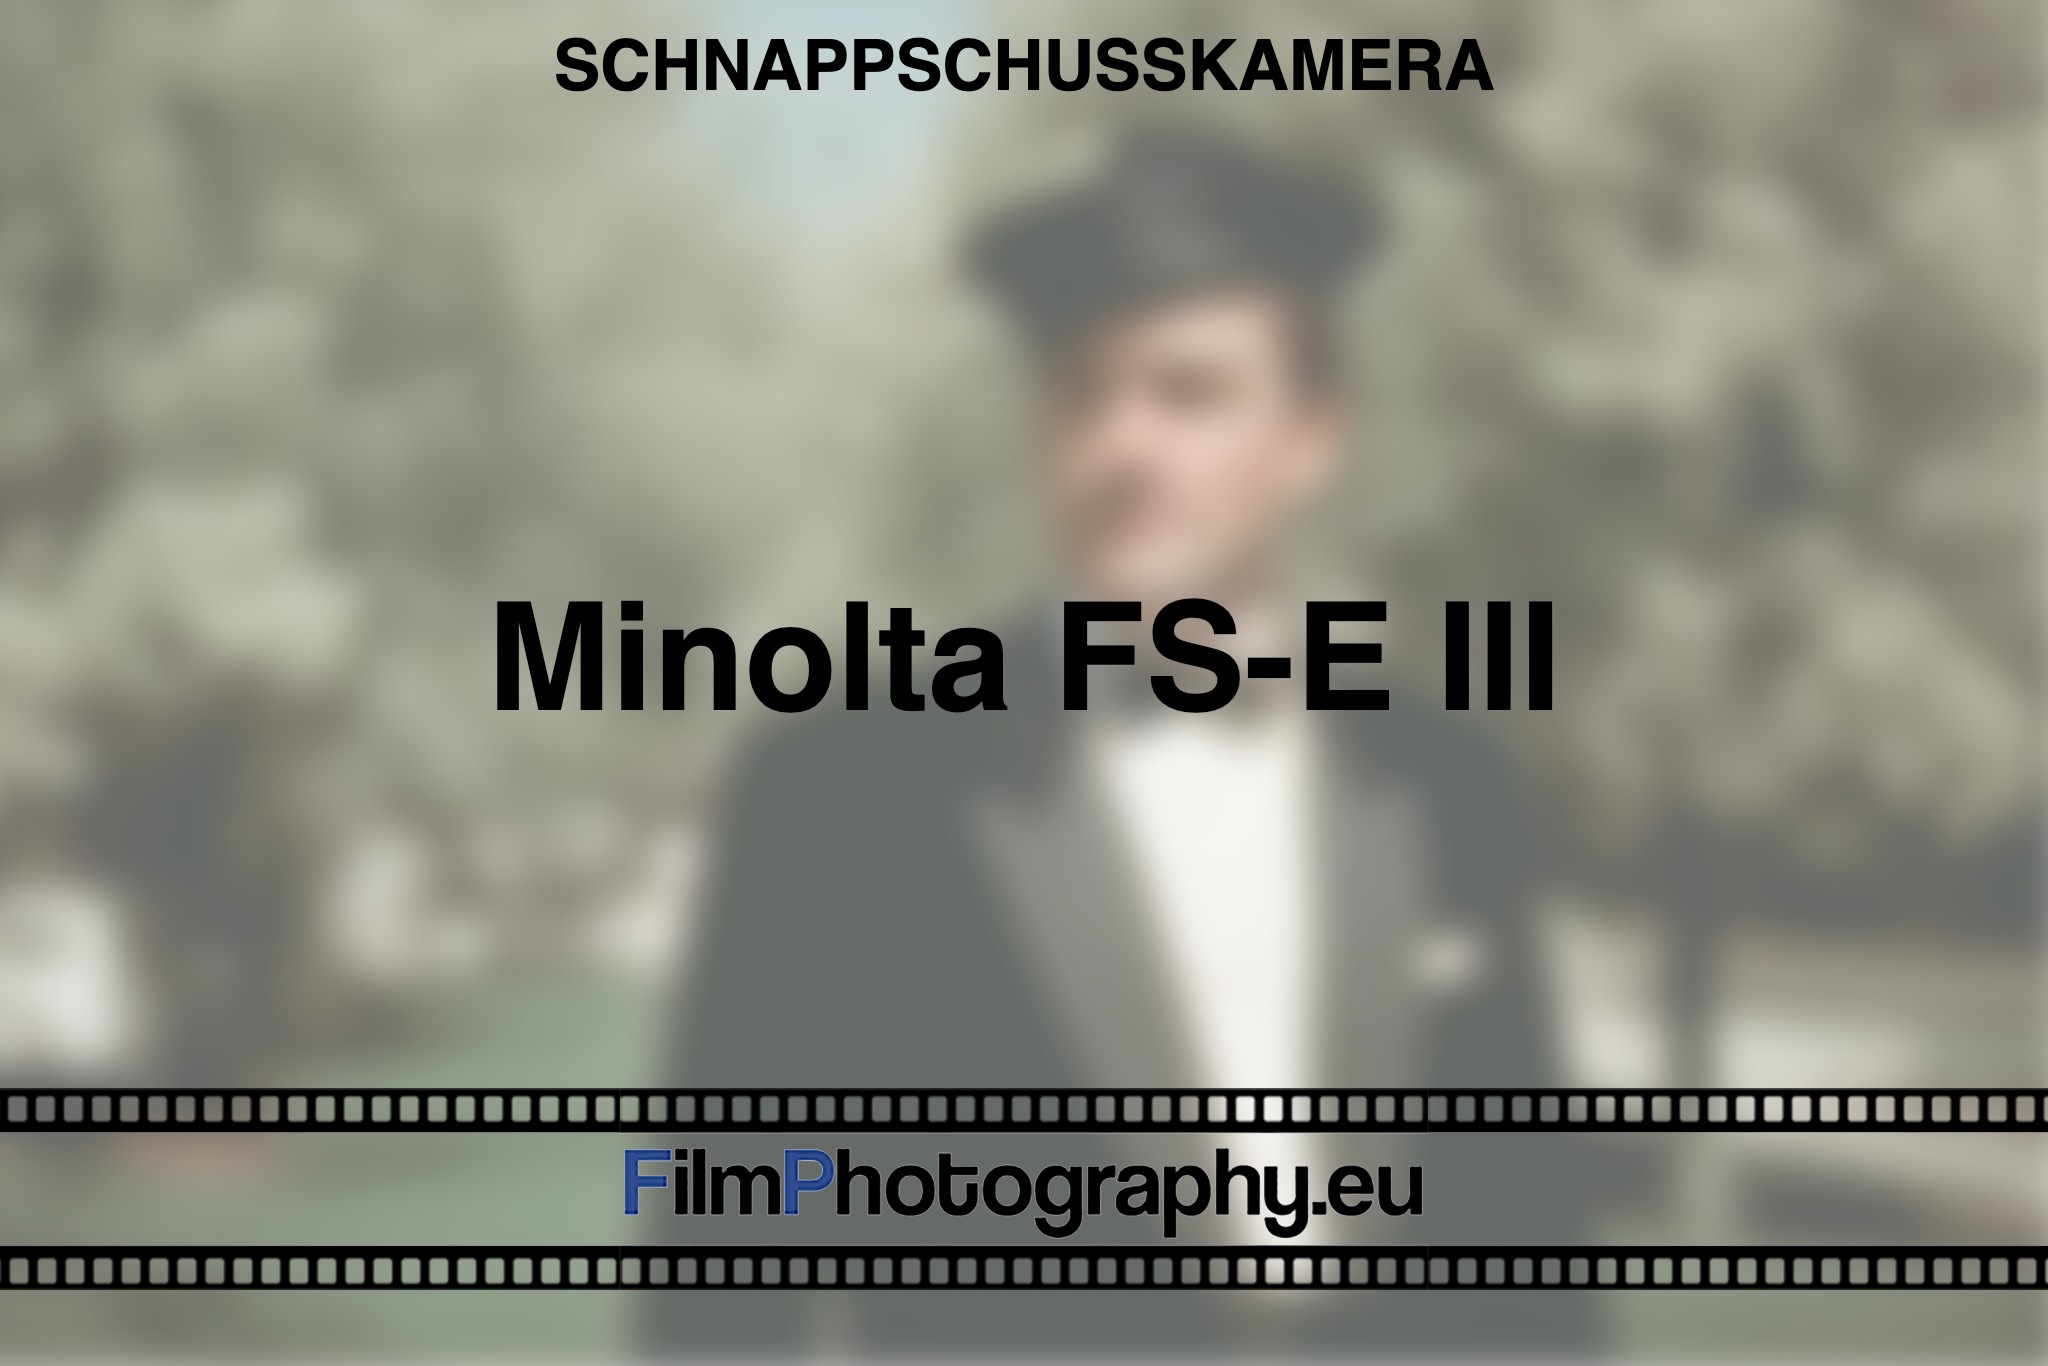 minolta-fs-e-iii-schnappschusskamera-bnv